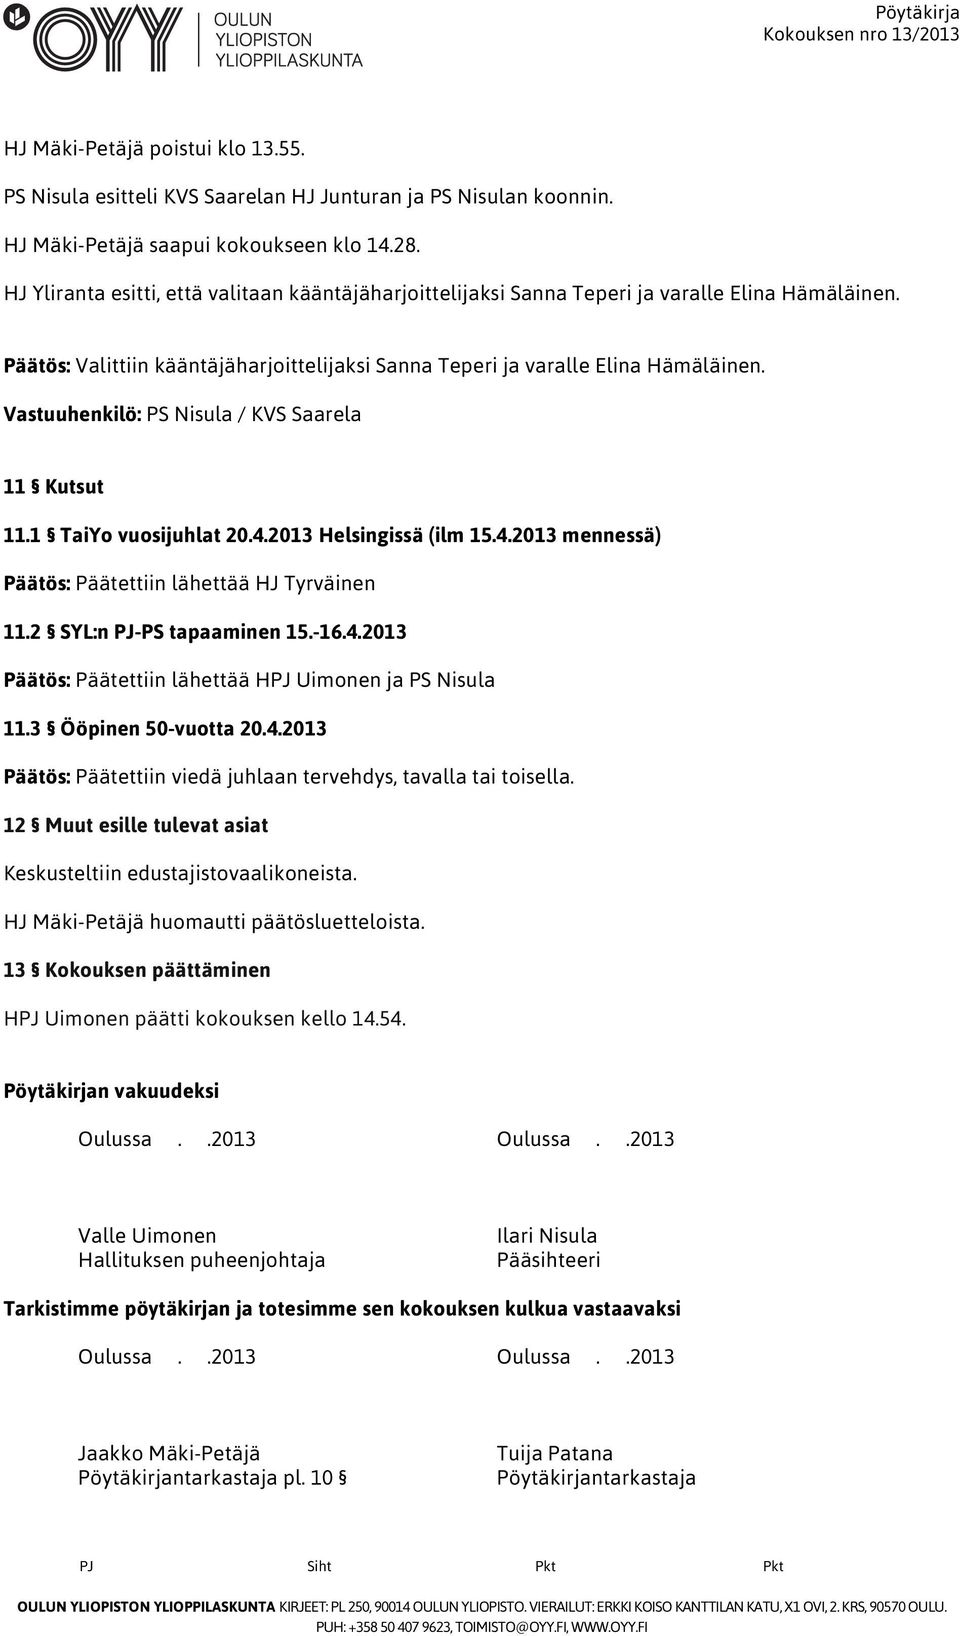 Vastuuhenkilö: PS Nisula / KVS Saarela 11 Kutsut 11.1 TaiYo vuosijuhlat 20.4.2013 Helsingissä (ilm 15.4.2013 mennessä) Päätös: Päätettiin lähettää HJ Tyrväinen 11.2 SYL:n PJ-PS tapaaminen 15.-16.4.2013 Päätös: Päätettiin lähettää HPJ Uimonen ja PS Nisula 11.